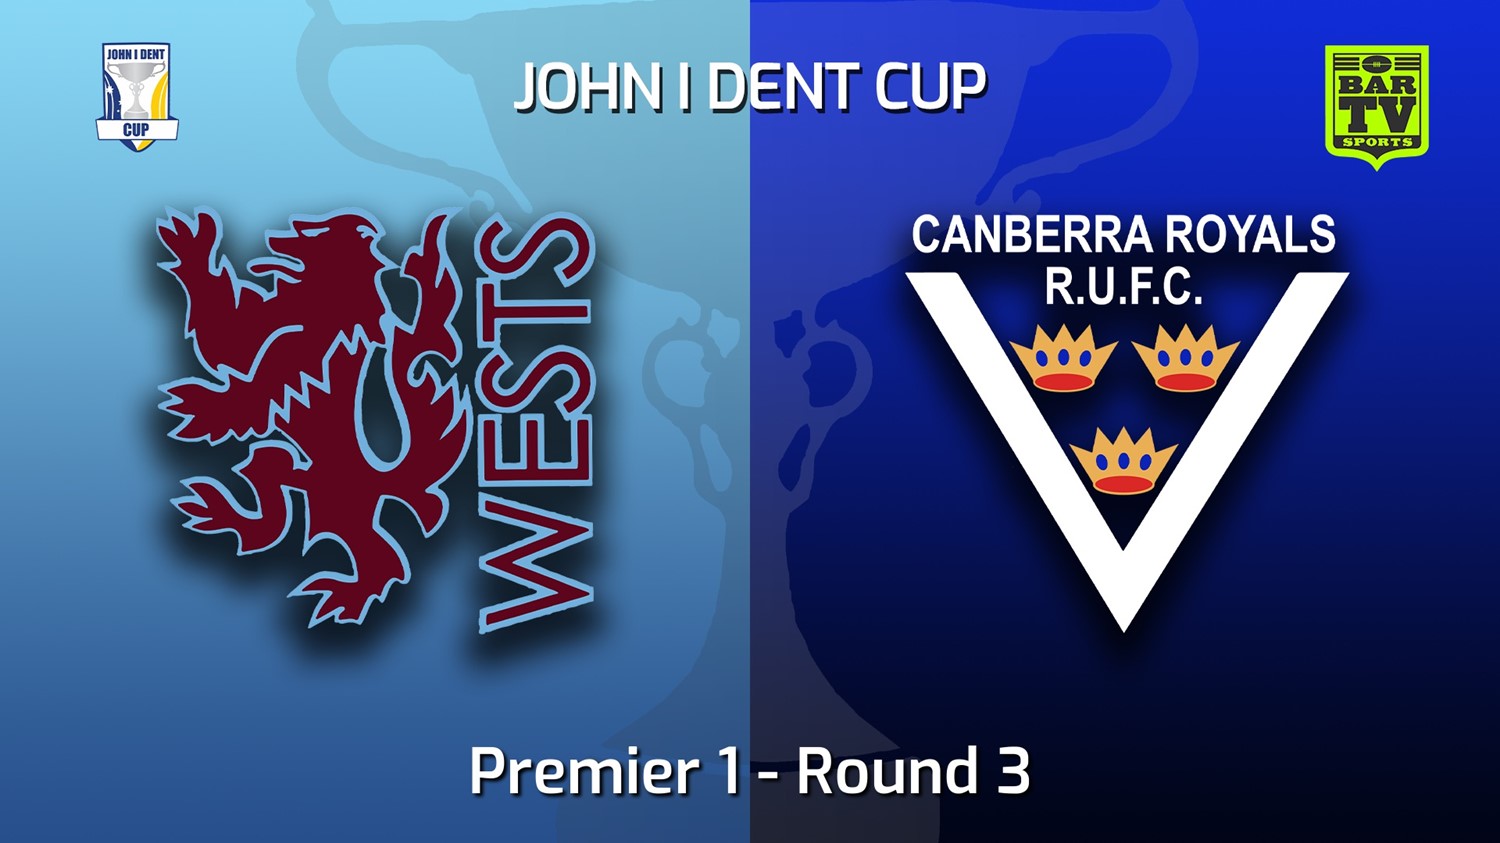 220507-John I Dent (ACT) Round 3 - Premier 1 - Wests Lions v Canberra Royals Minigame Slate Image